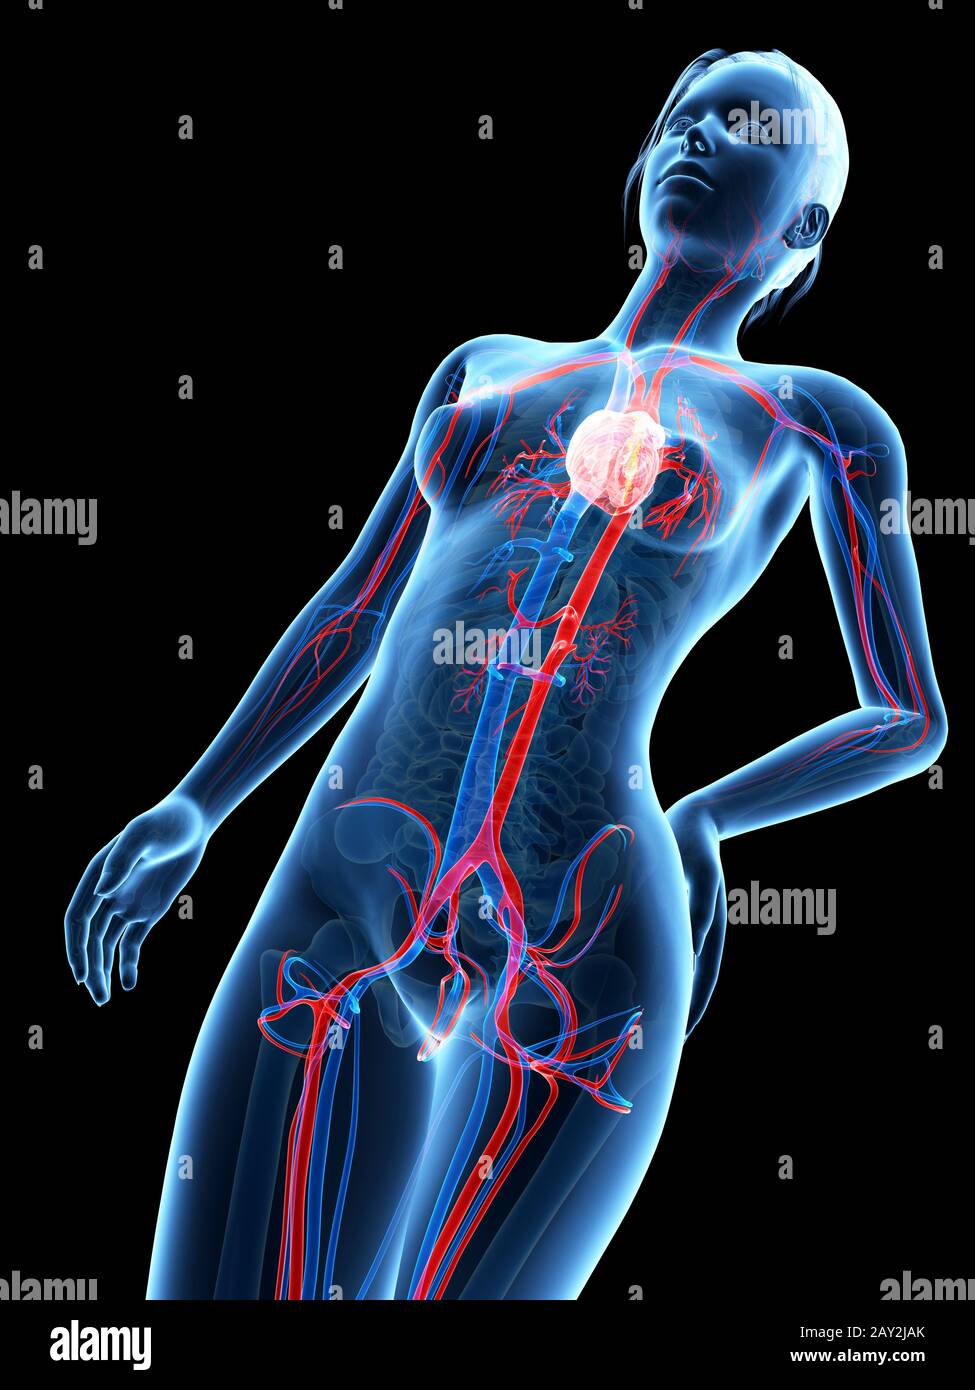 illustrazione 3d medica - anatomia femminile - sistema cardiovascolare Foto Stock